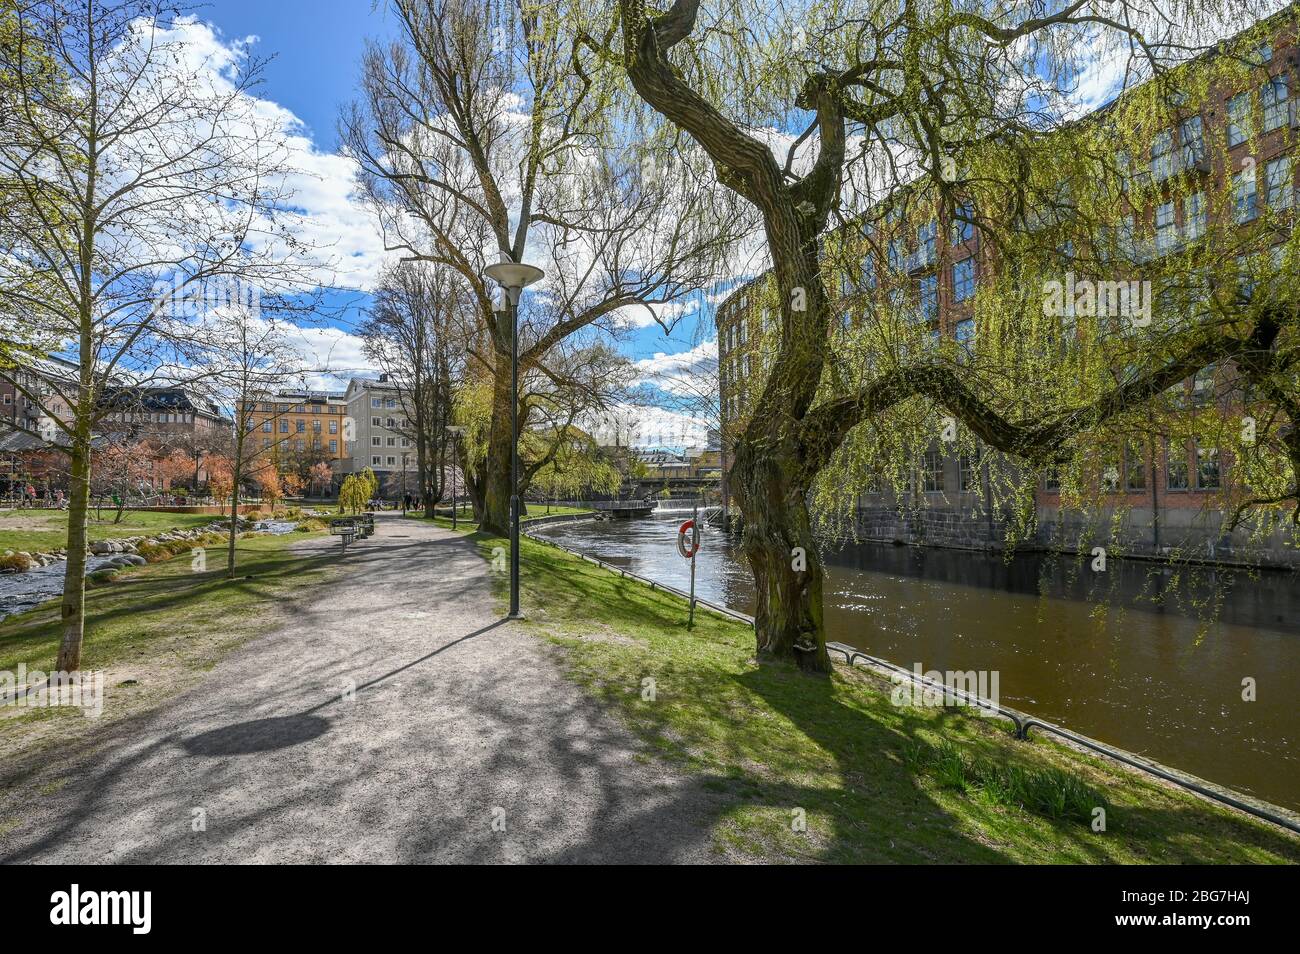 Les personnes non reconnaissables apprécieront le parc riverain Stromparken le long de la rivière Motala à Norrkoping au début du printemps en Suède. Banque D'Images